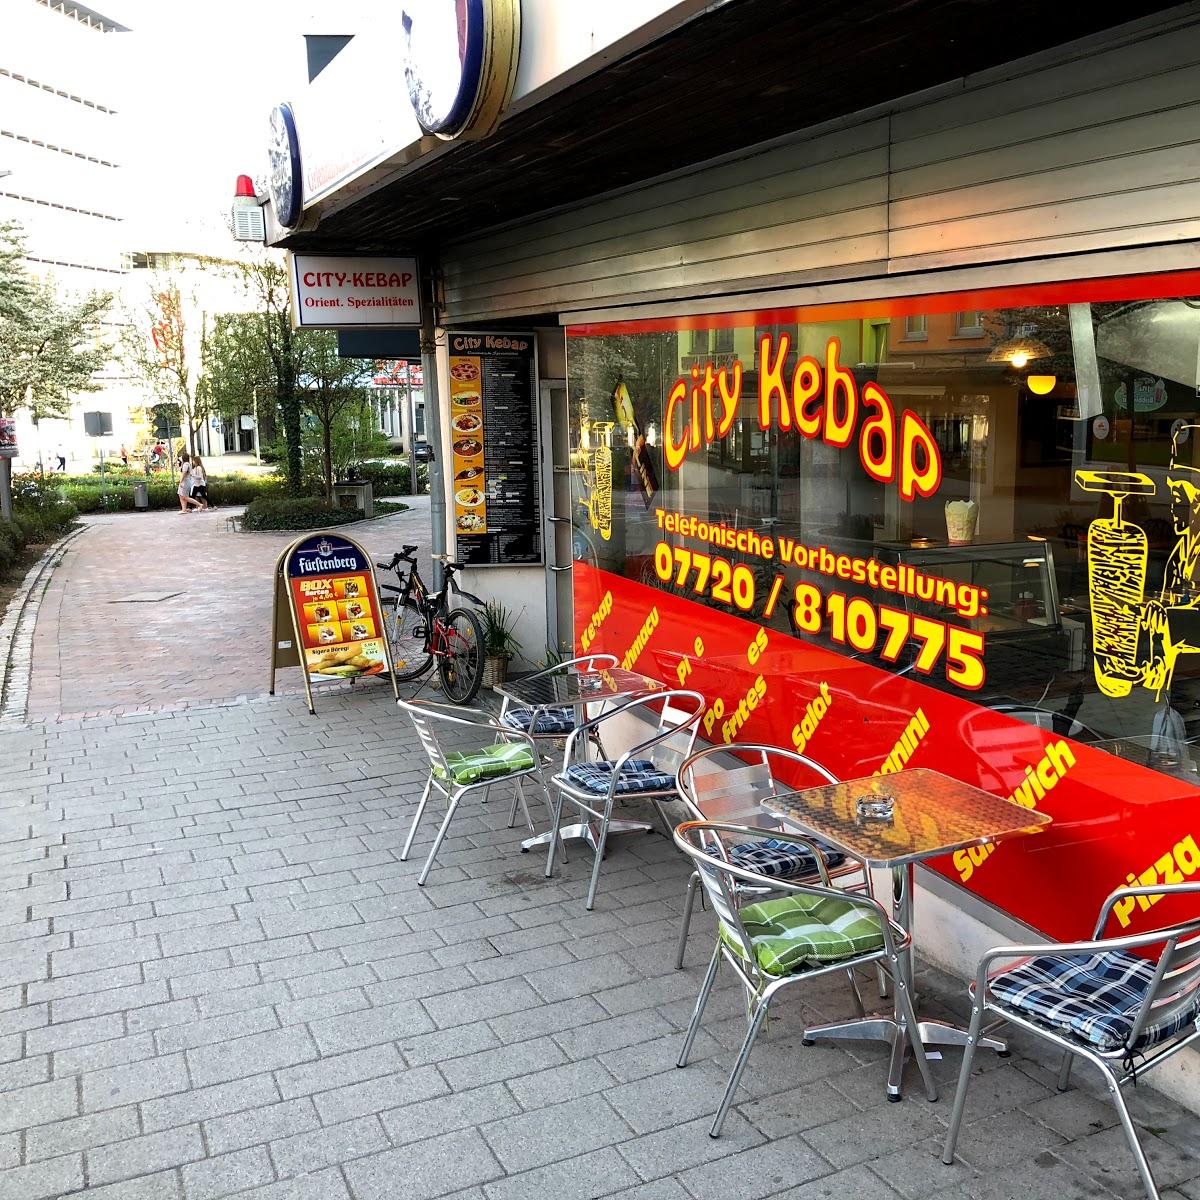 Restaurant "City Kebap" in Villingen-Schwenningen